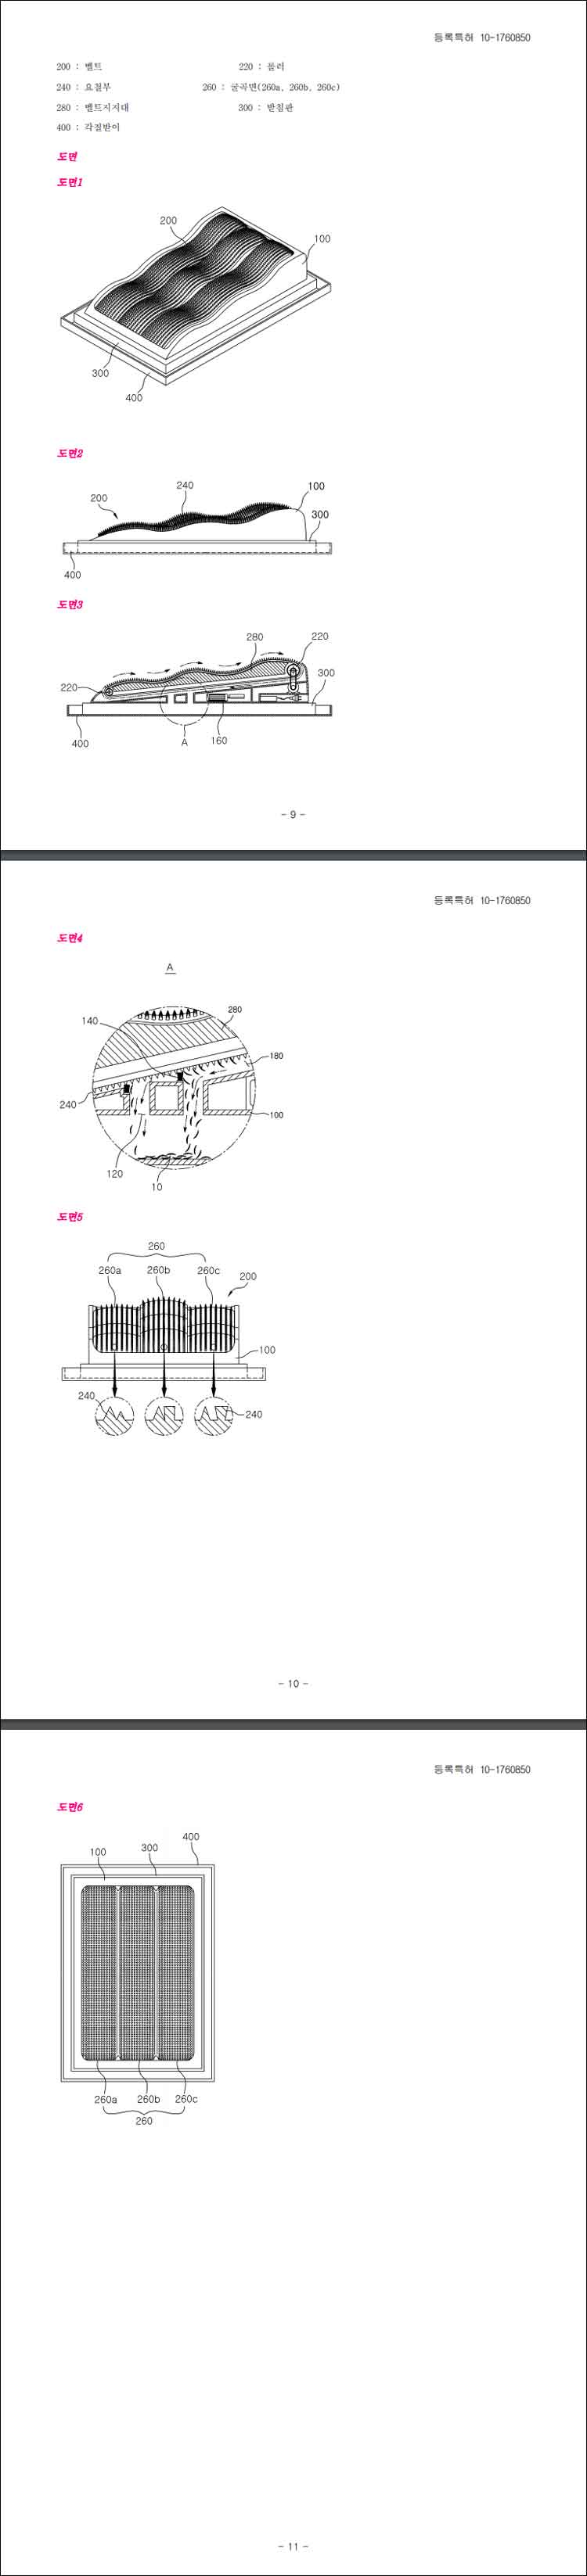 특허 제10-1760850호(신경계 자극을 위한 컨베이어벨트형 발 마사지기, 박용만)